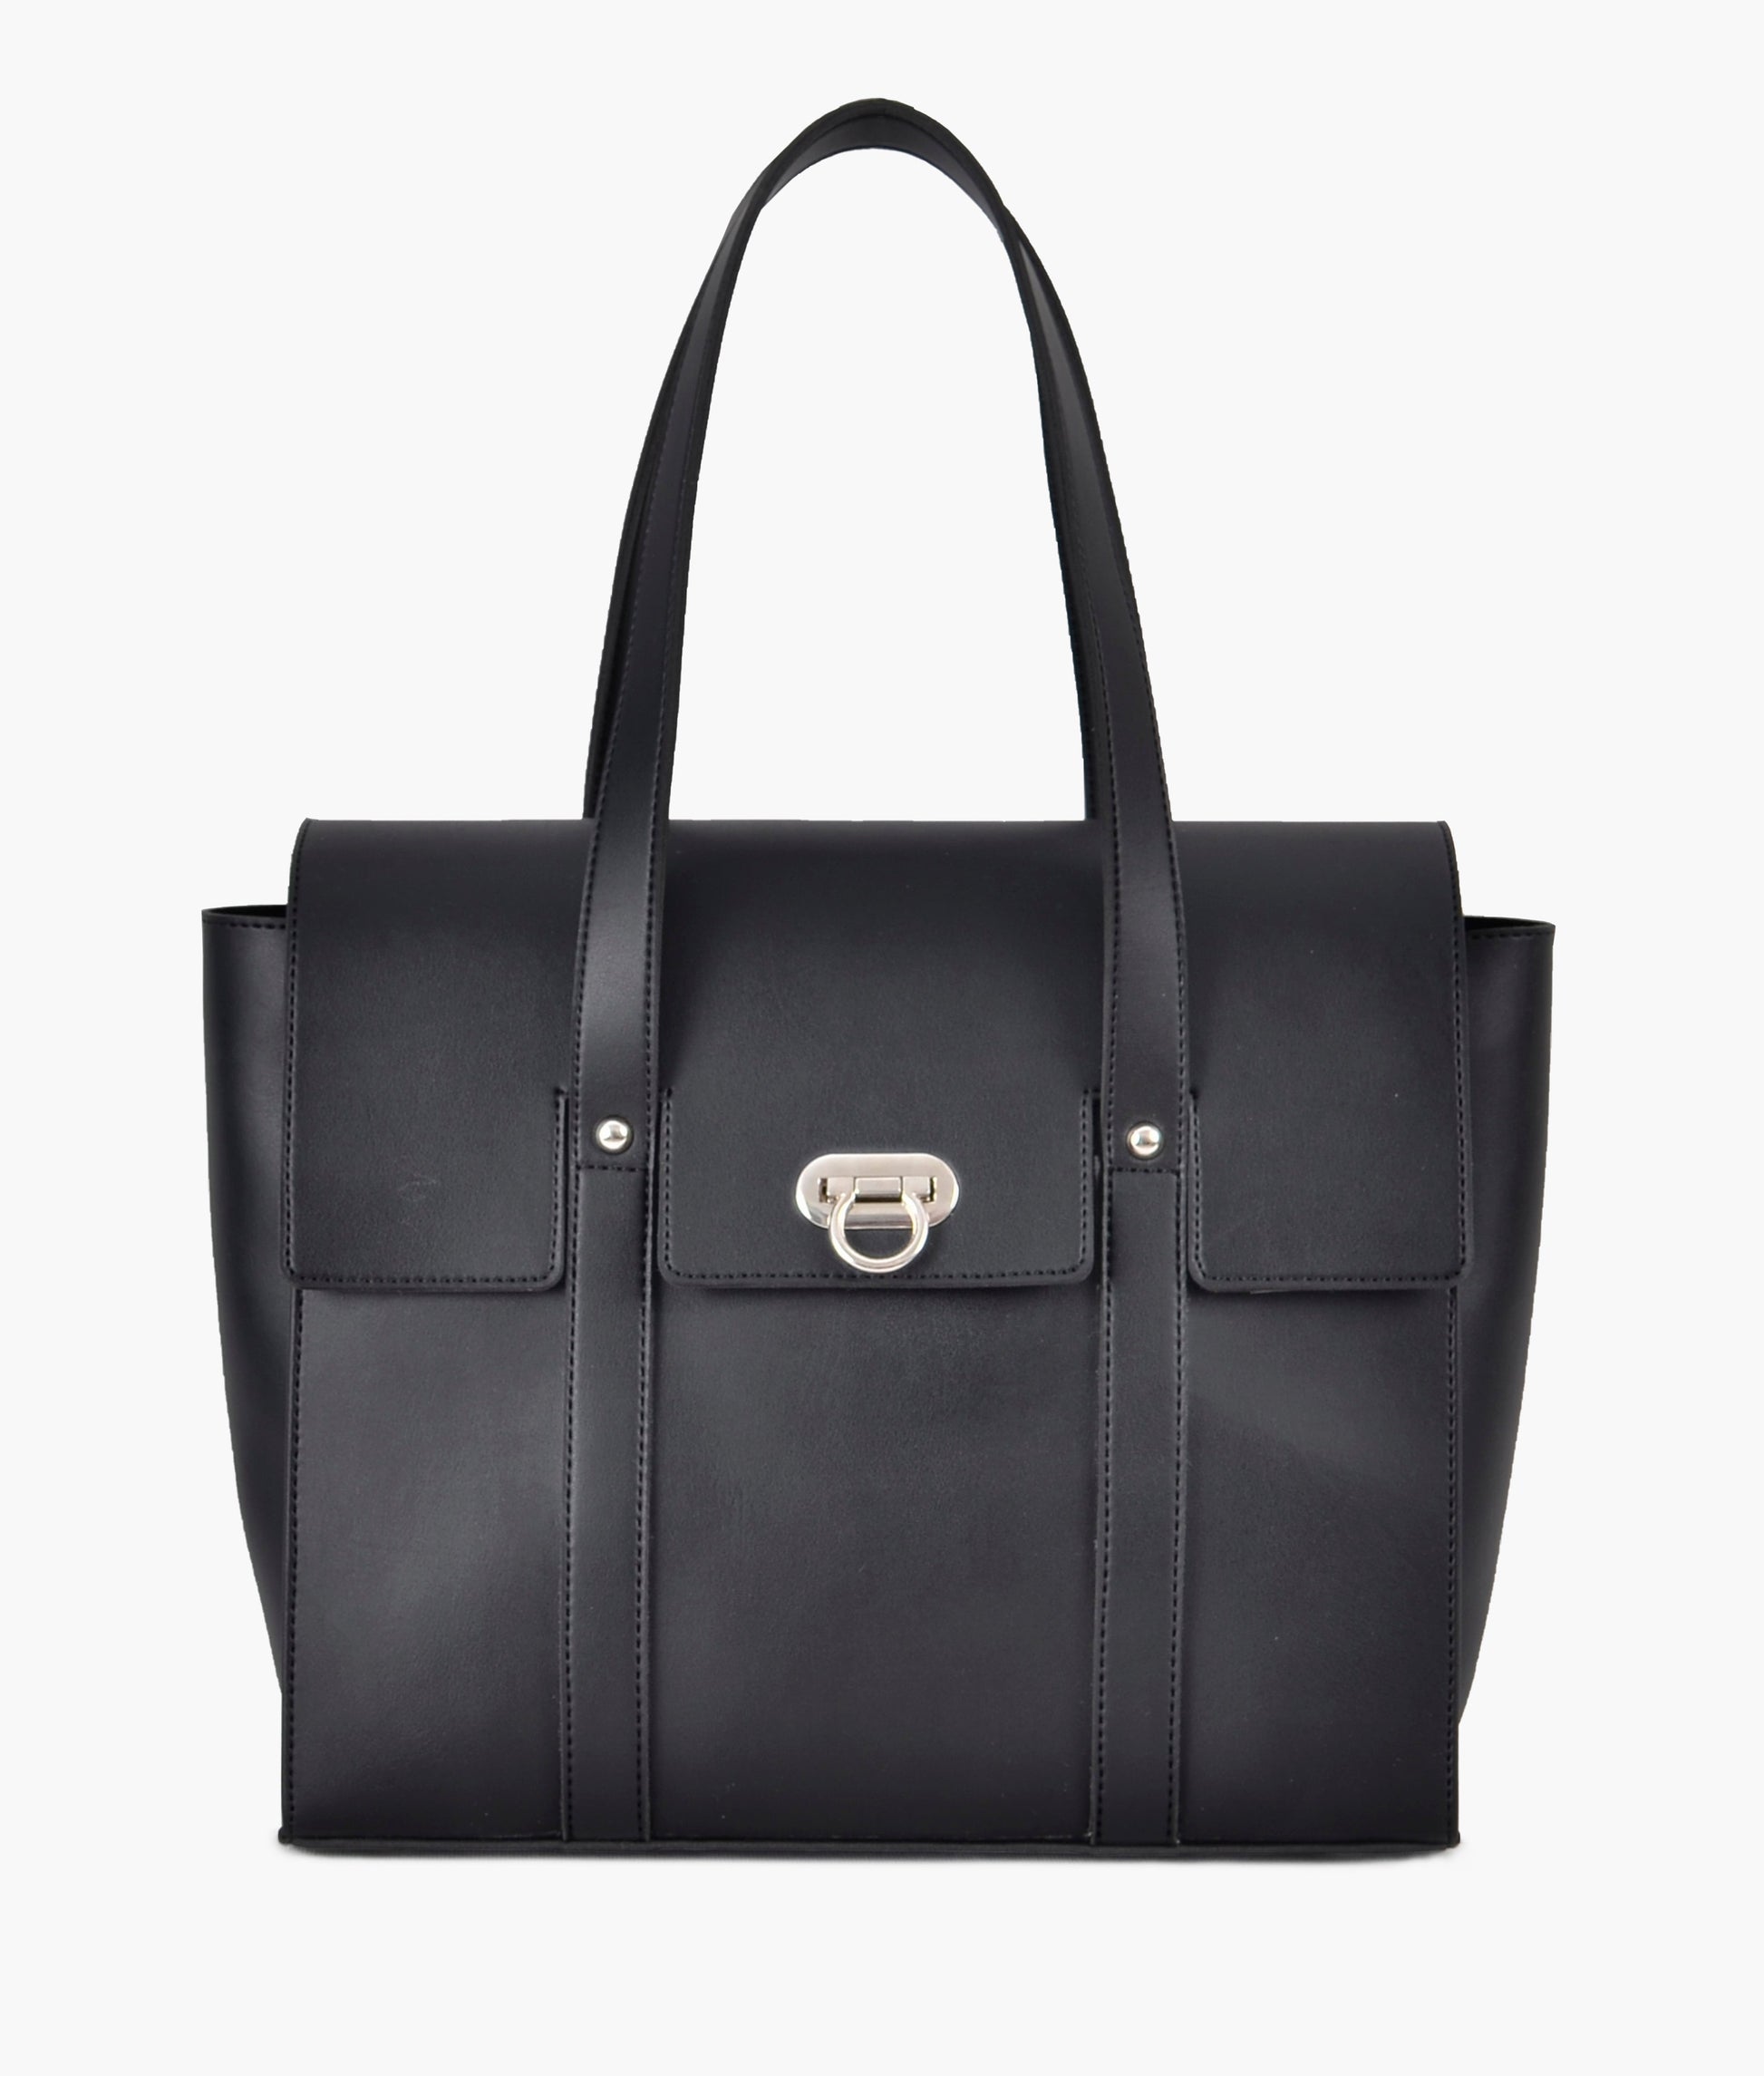 Black Handbag For Girls 604